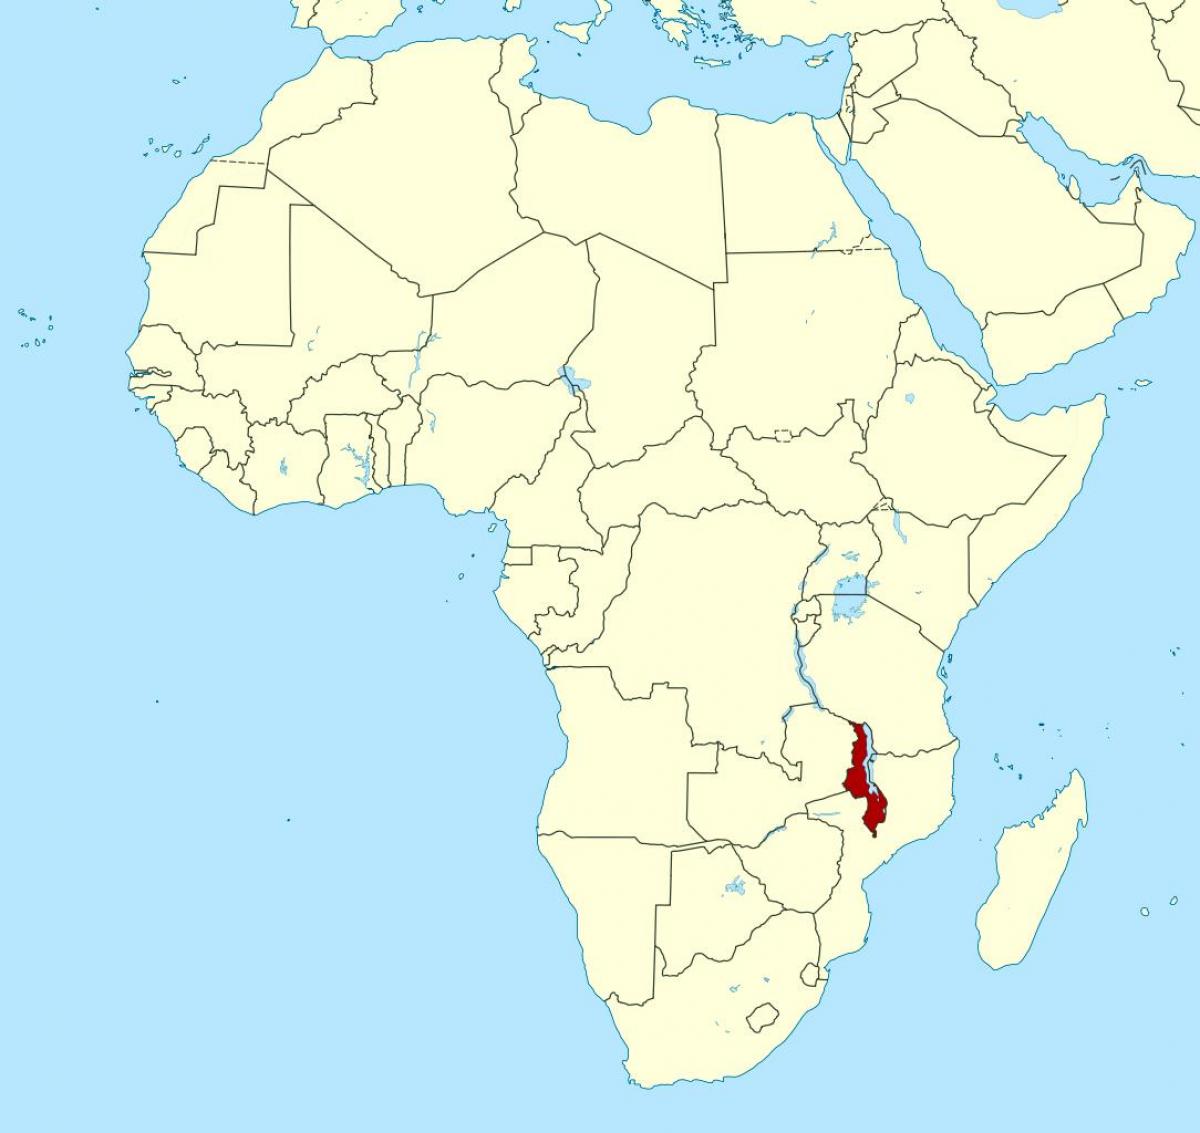 Малави локацију на мапи света